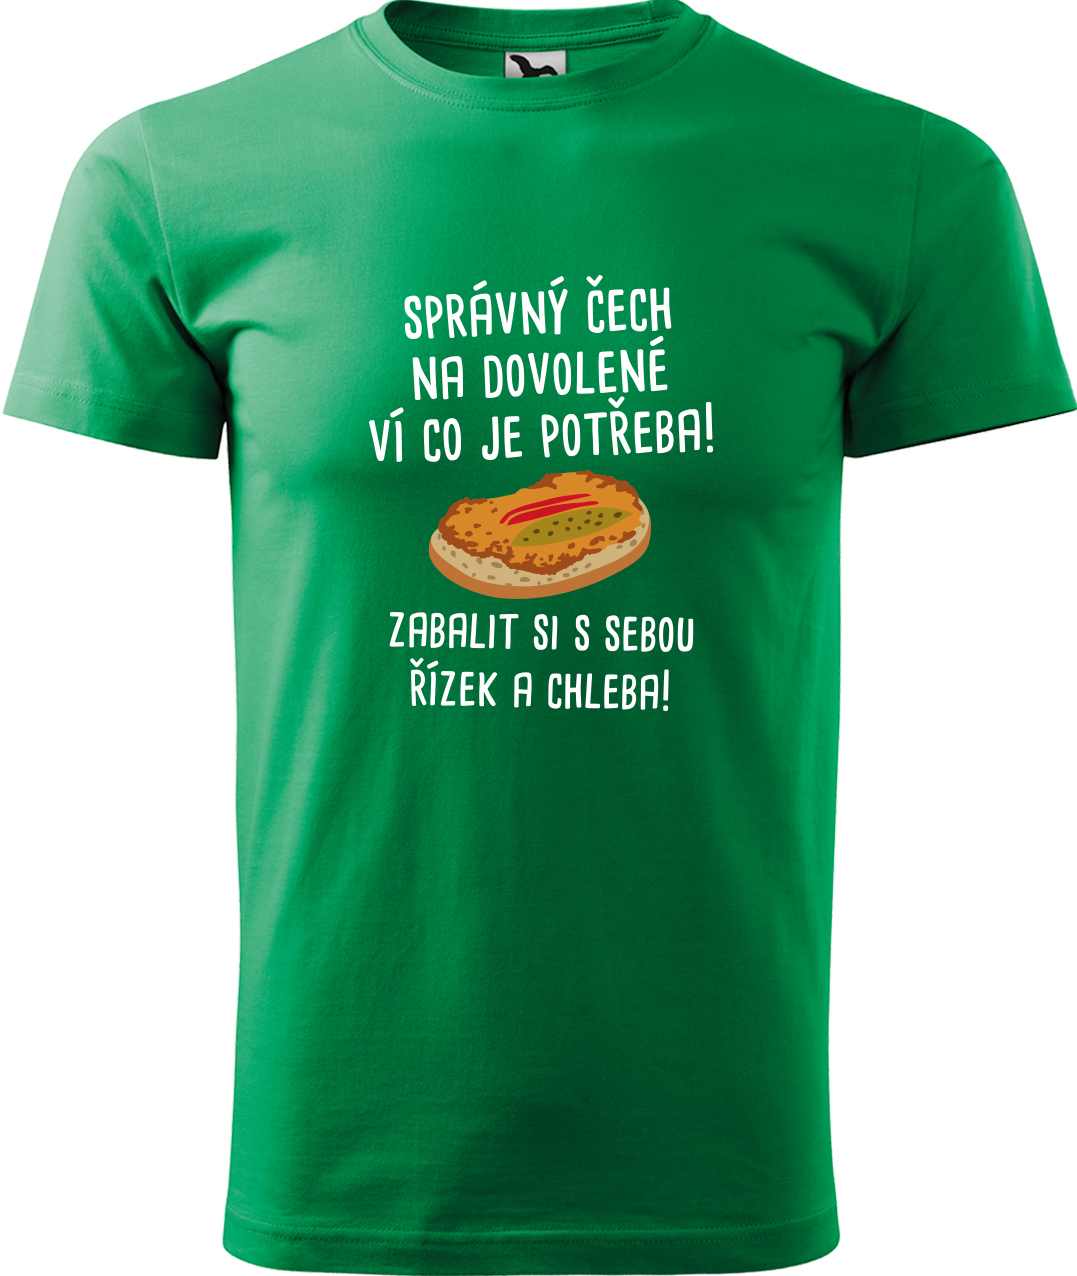 Pánské cestovatelské tričko - Správný Čech na dovolené, ví co je potřeba! Velikost: XL, Barva: Středně zelená (16), Střih: pánský